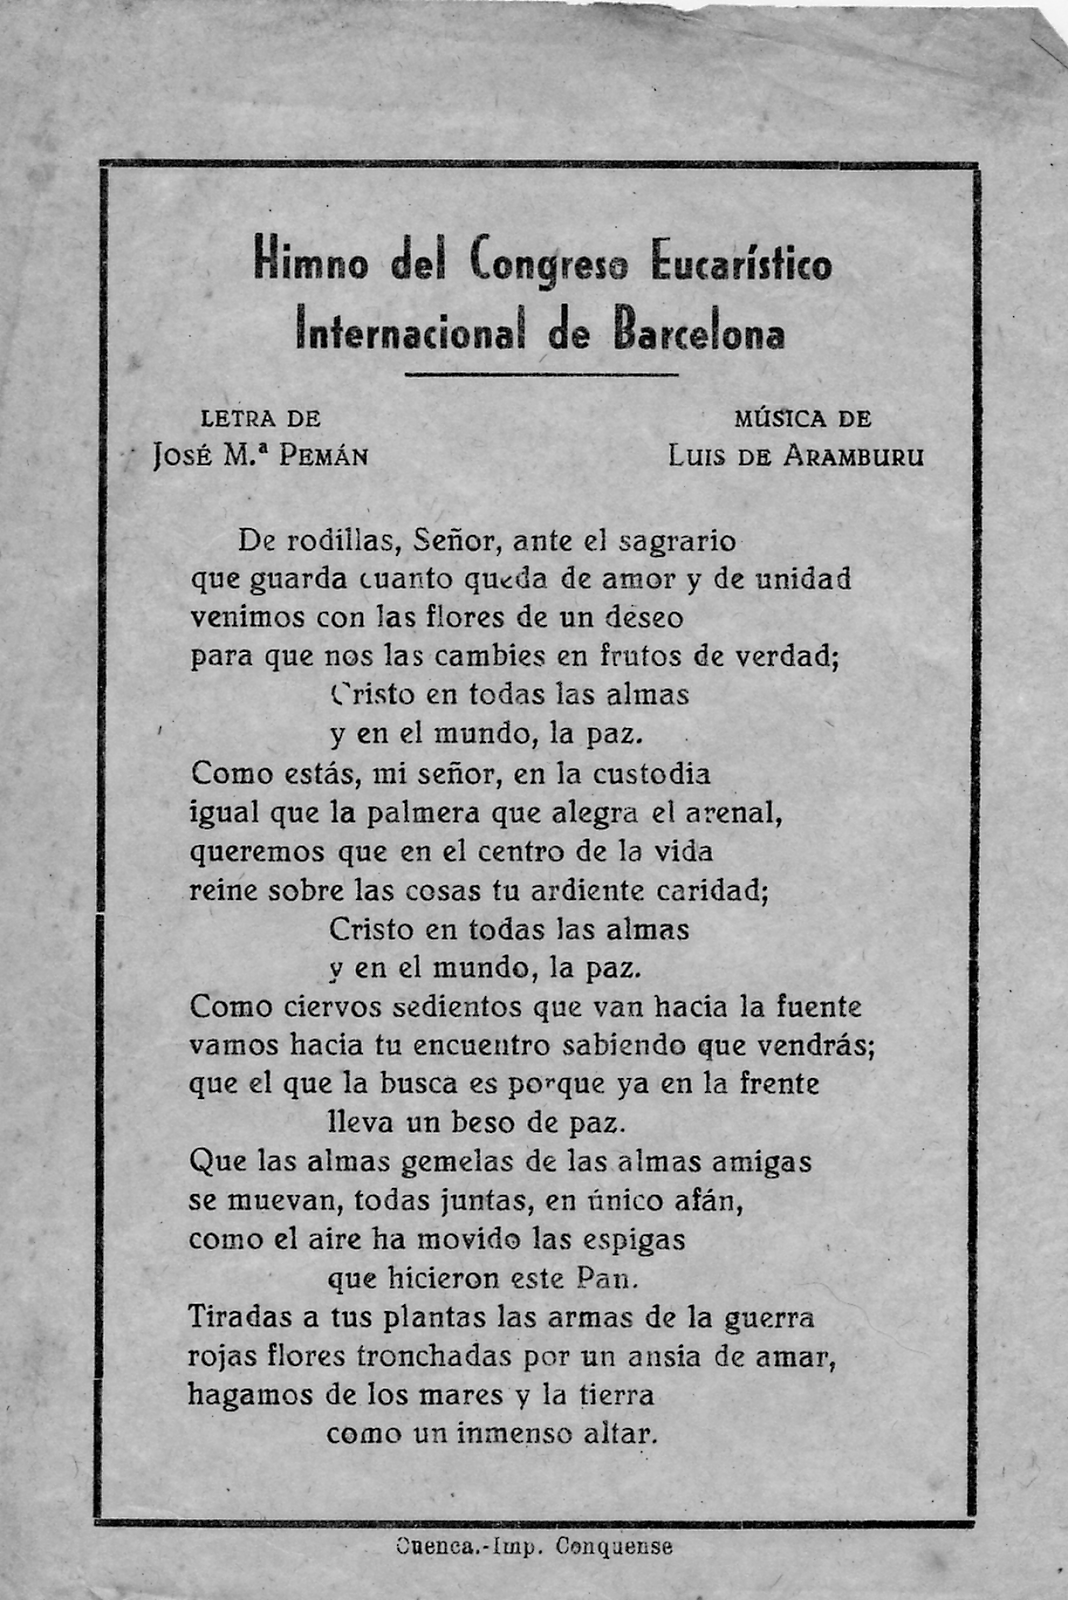 Himno del Congreso Eucarístico Internacional de Barcelona (1952)